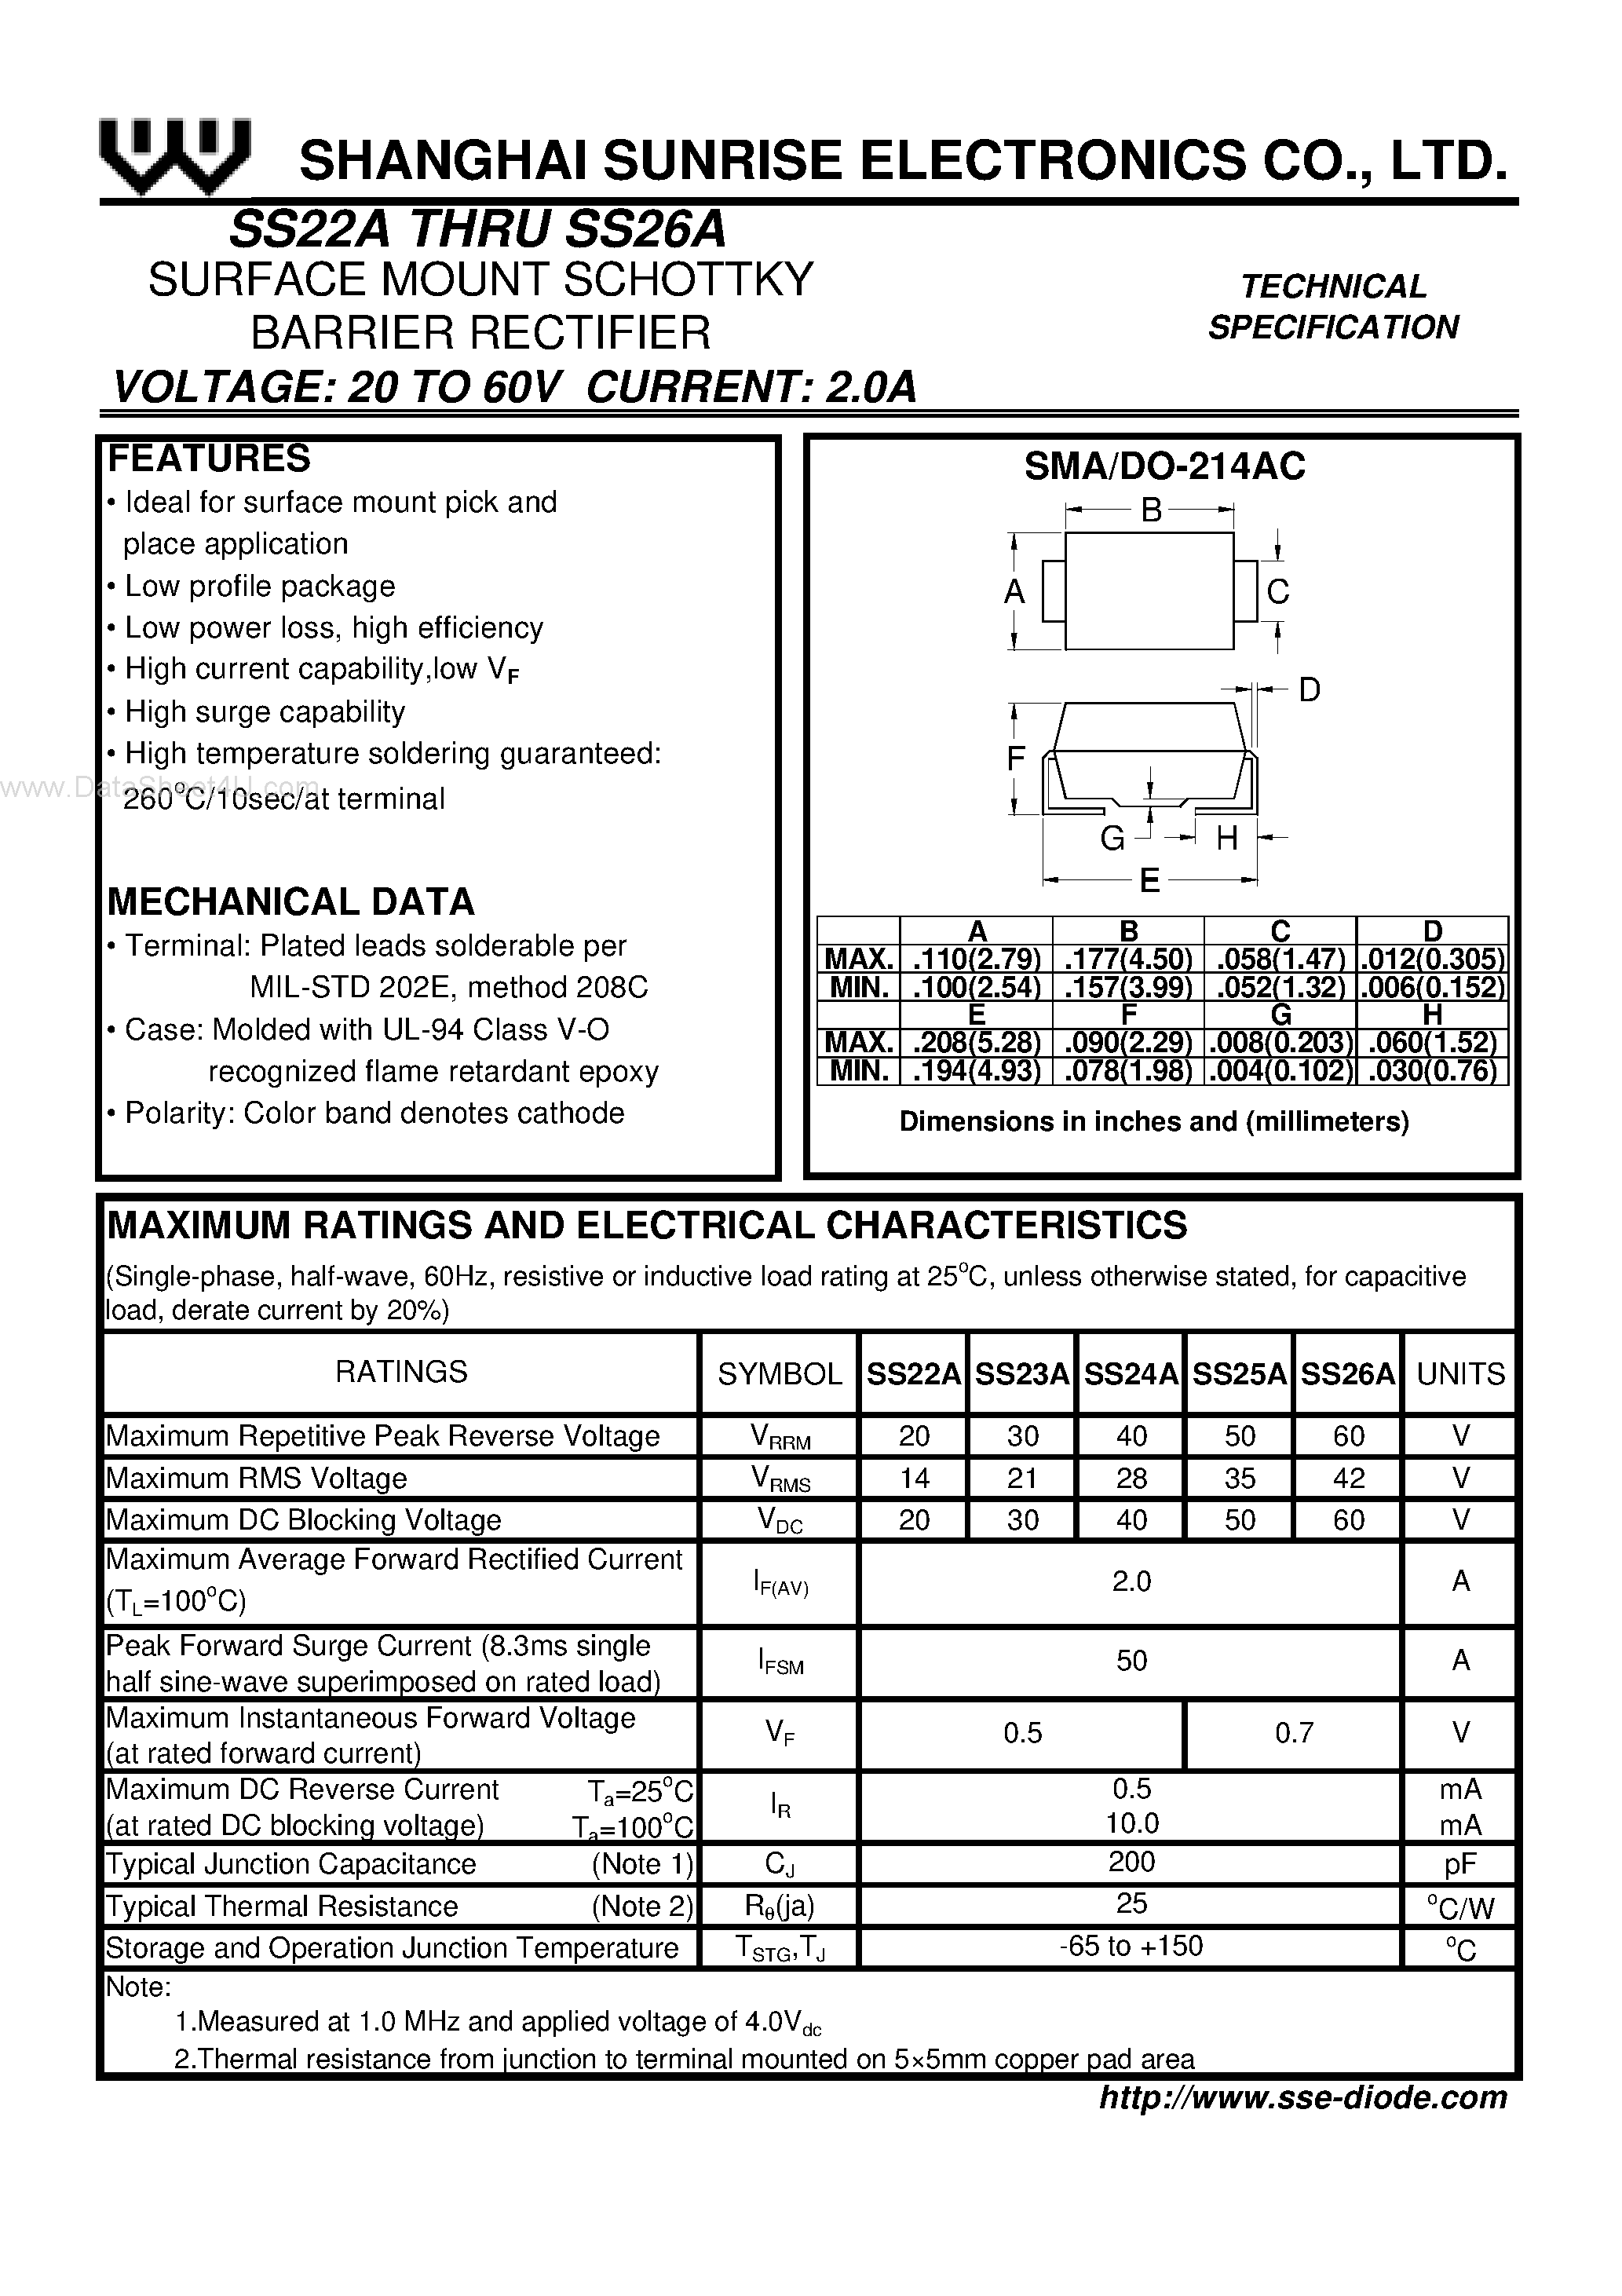 Datasheet SS22A - (SS22A - SS26A) SURFACE MOUNT SCHOTTKY BARRIER RECTIFIER page 1